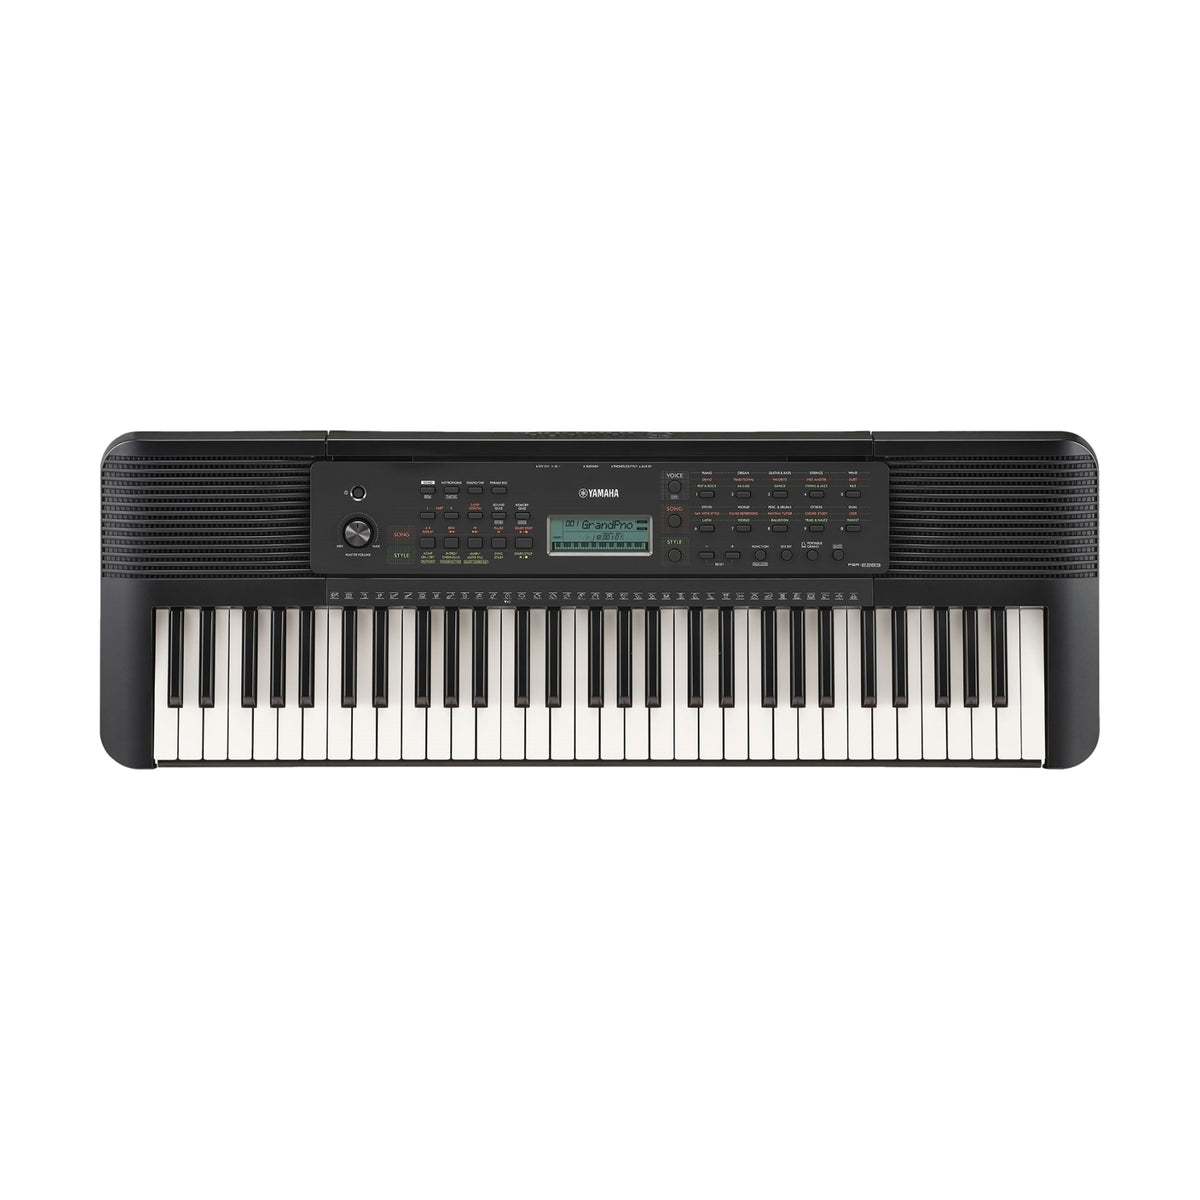 Yamaha PSR-E283 Portable Keyboard